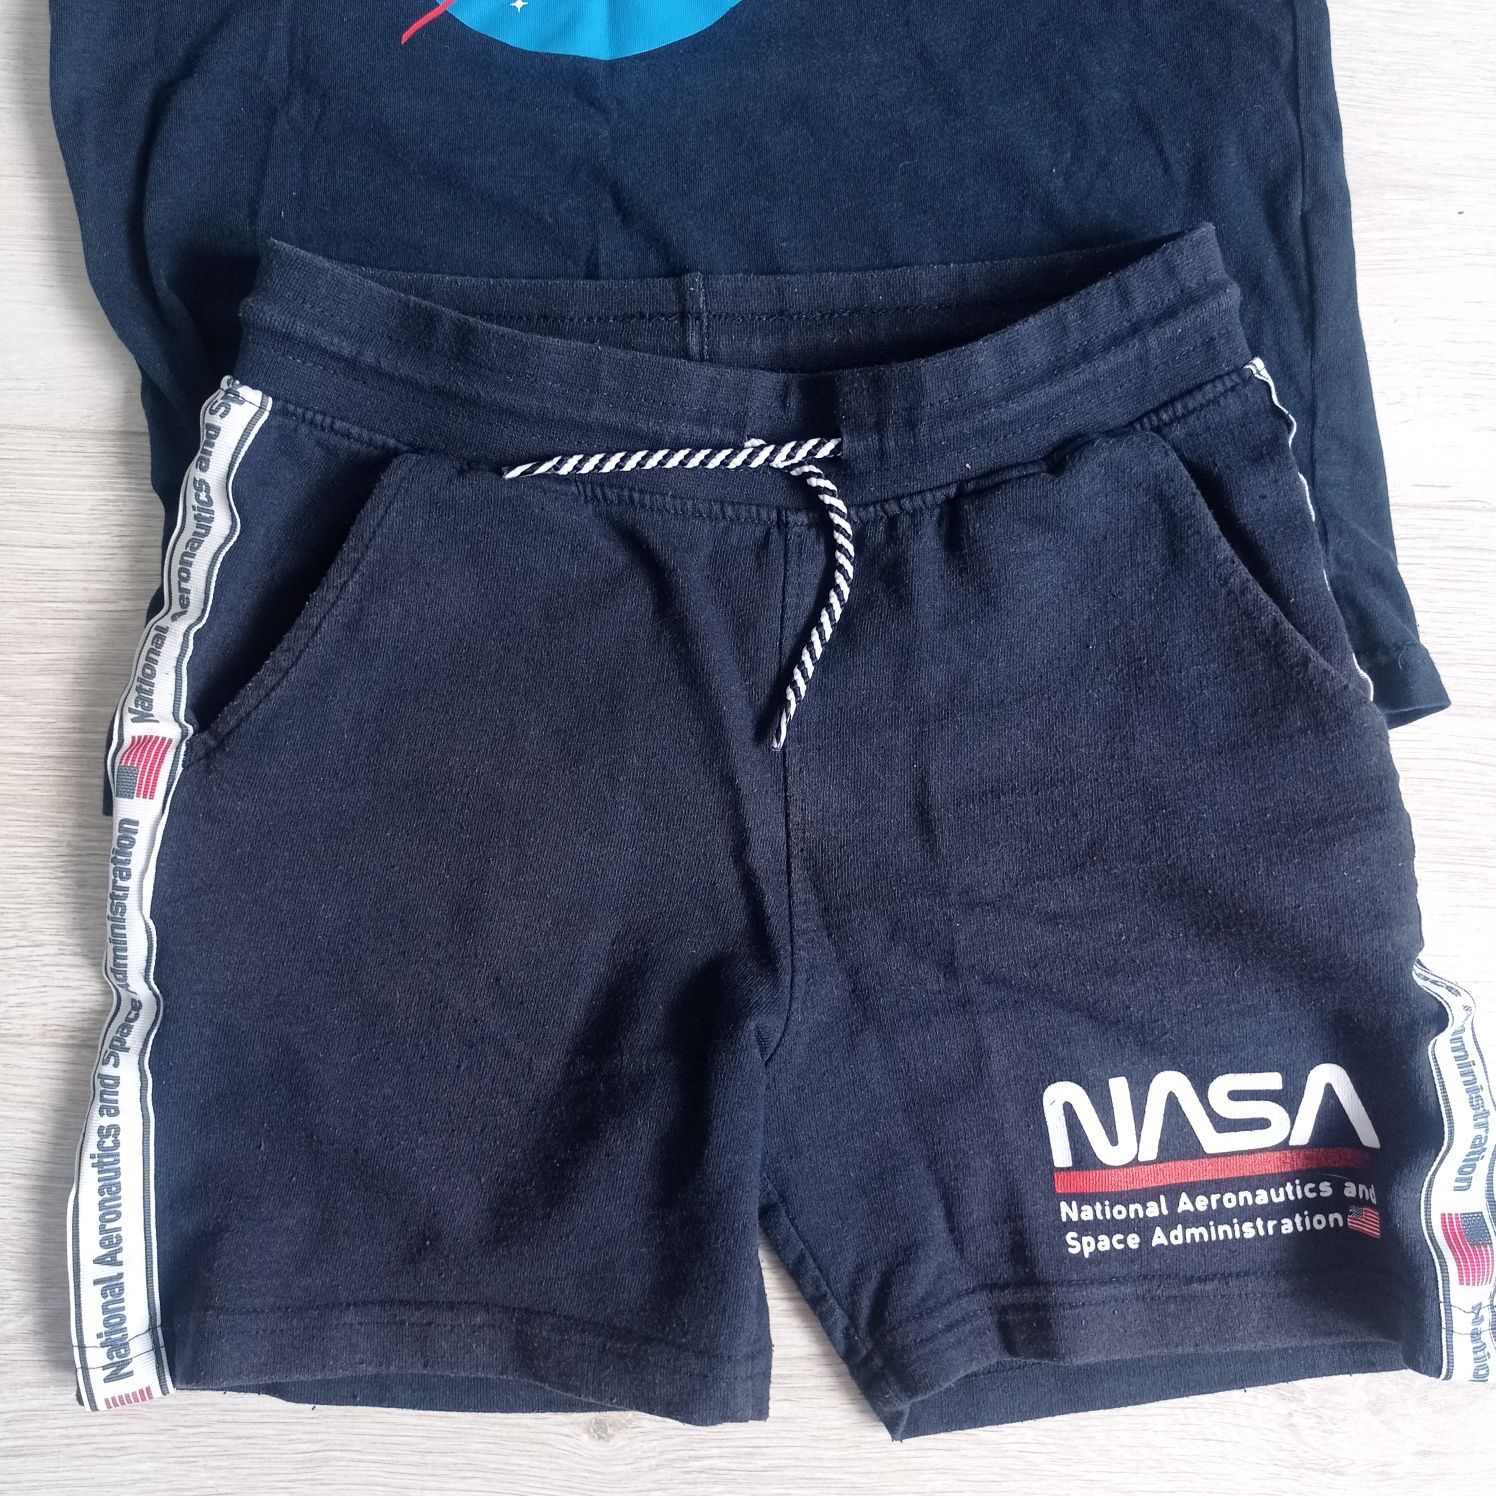 Zestaw ubrań dla chłopca NASA 134